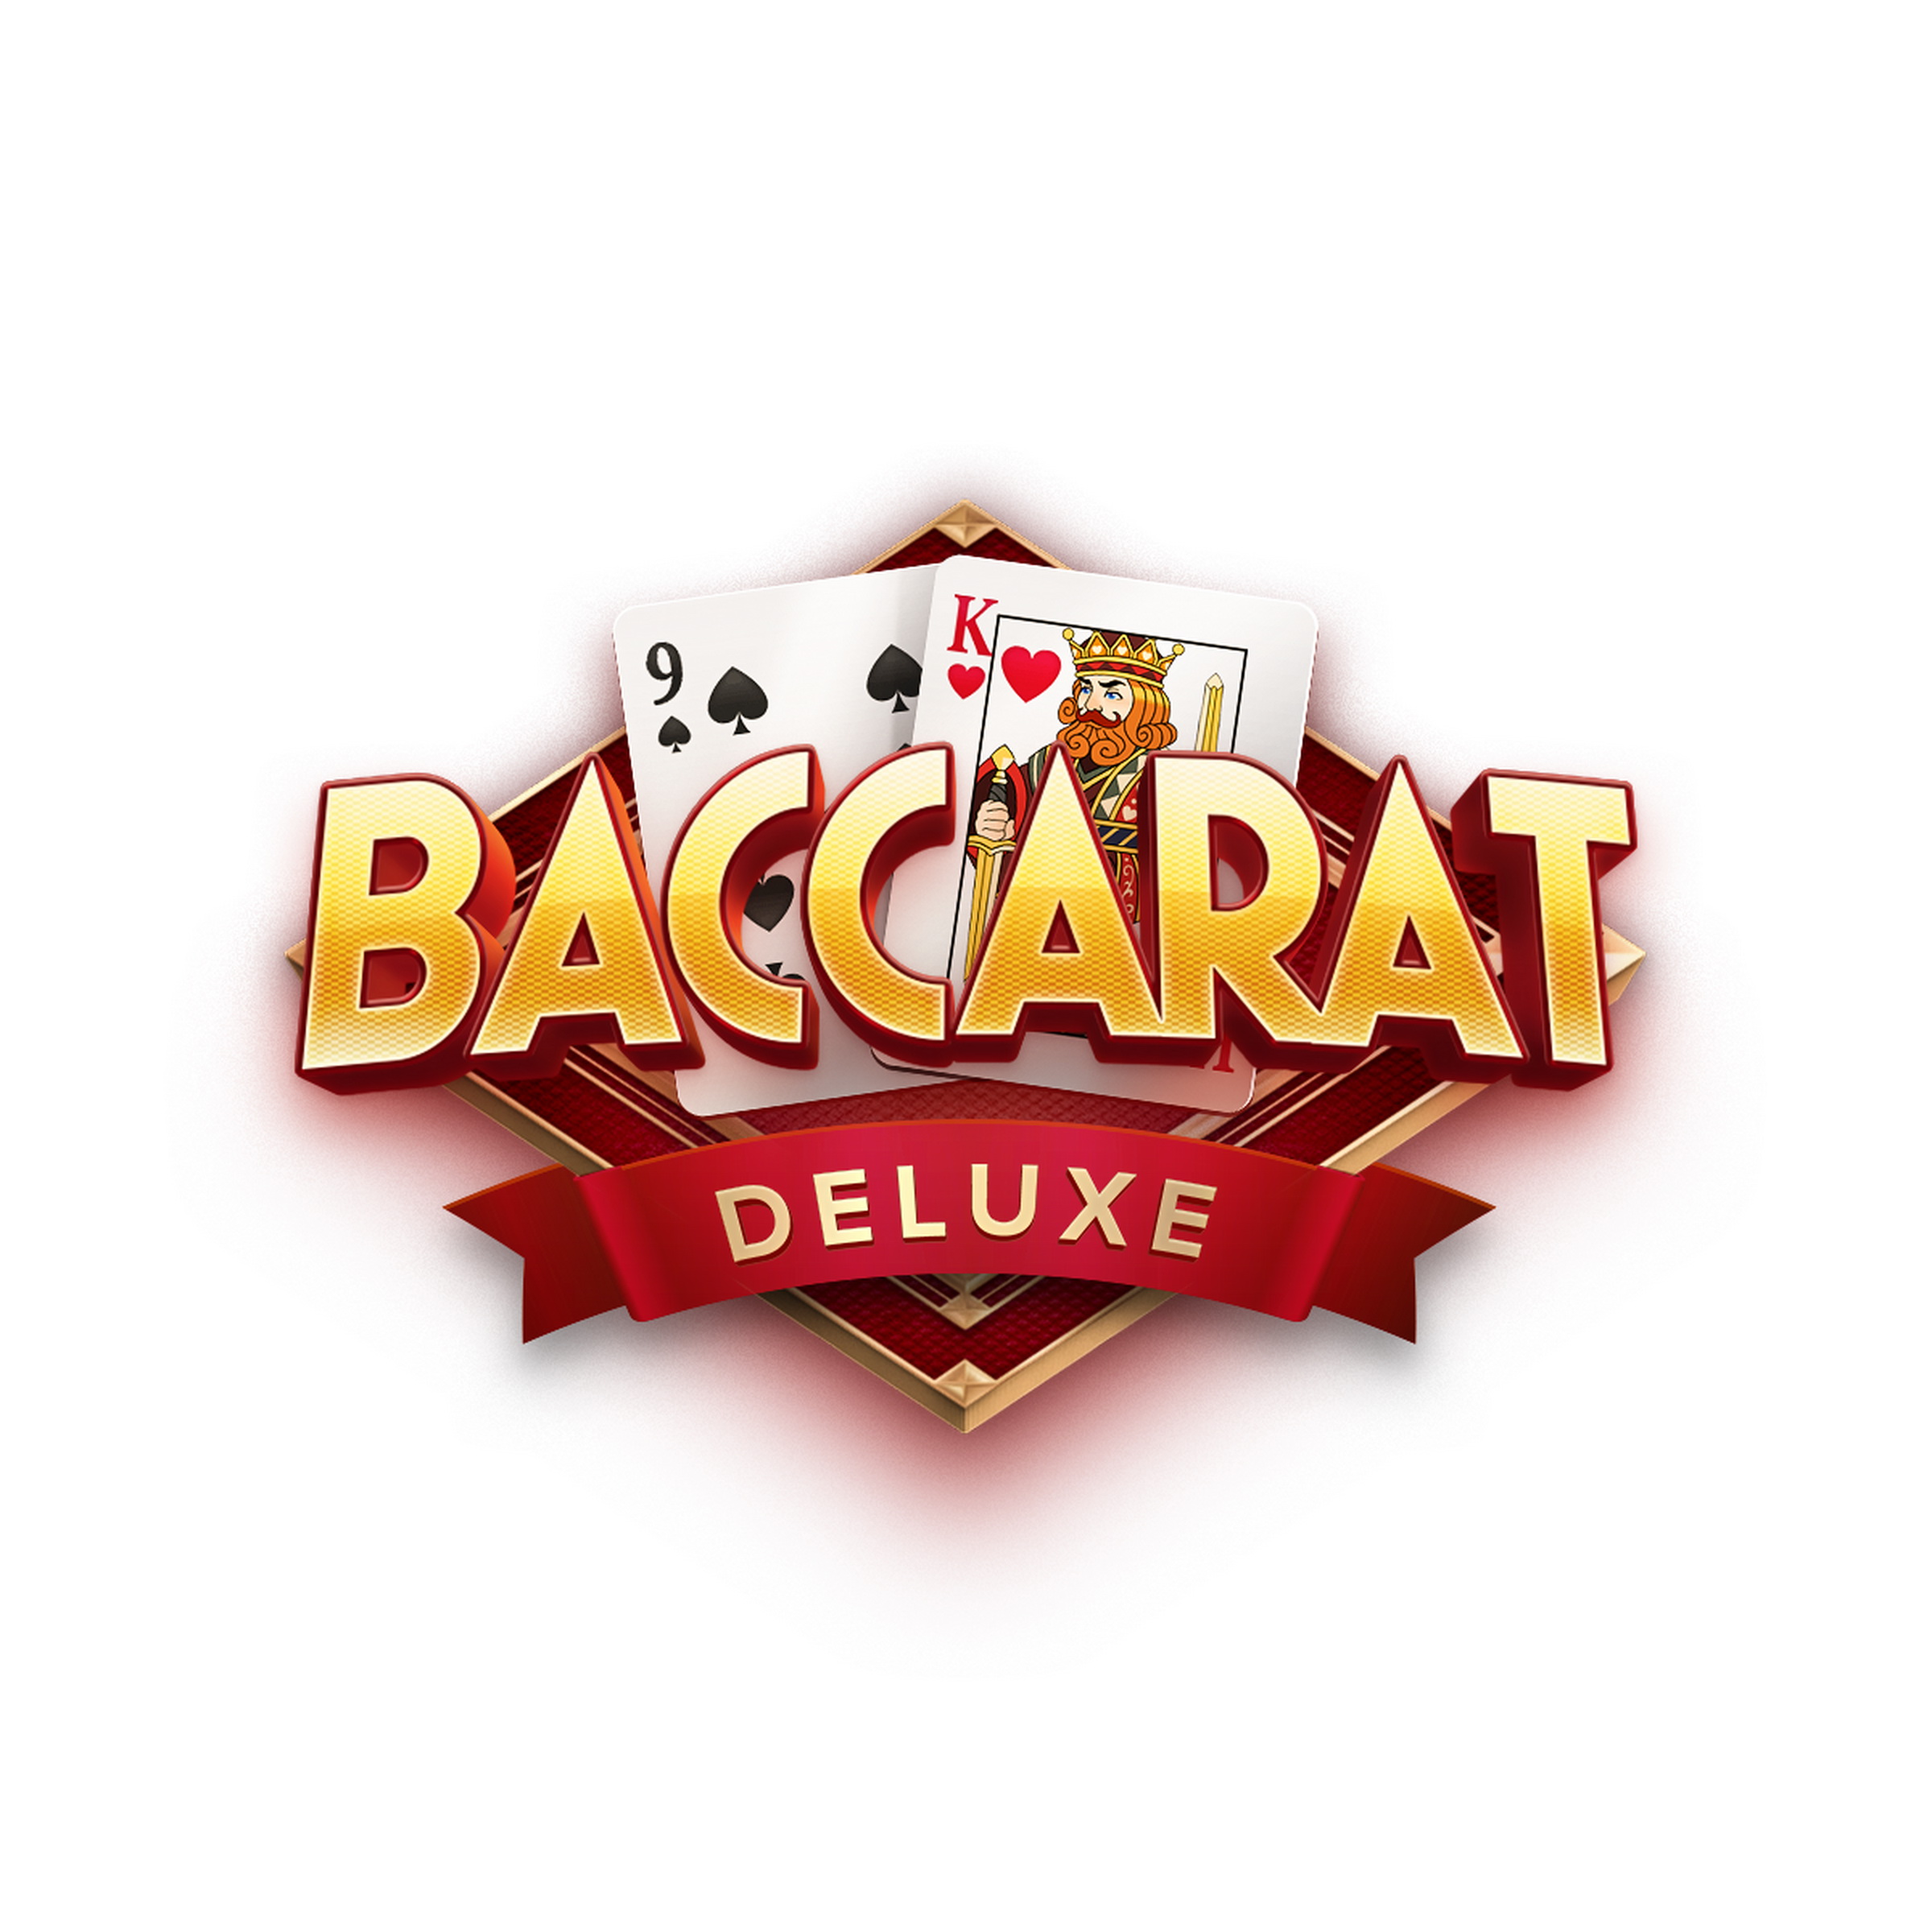 Baccarat Deluxe demo